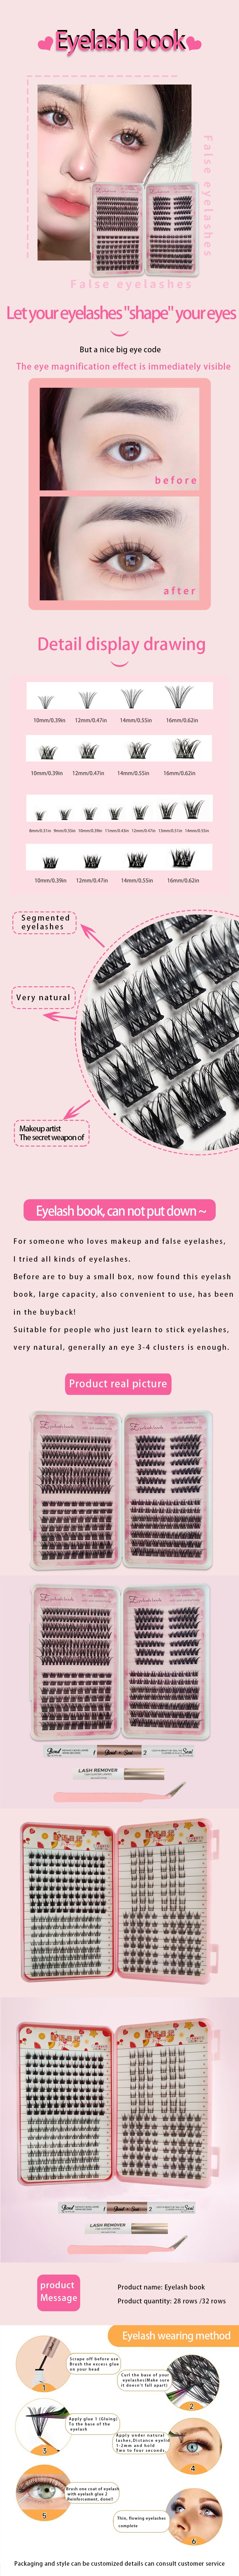 False Eyelashes book